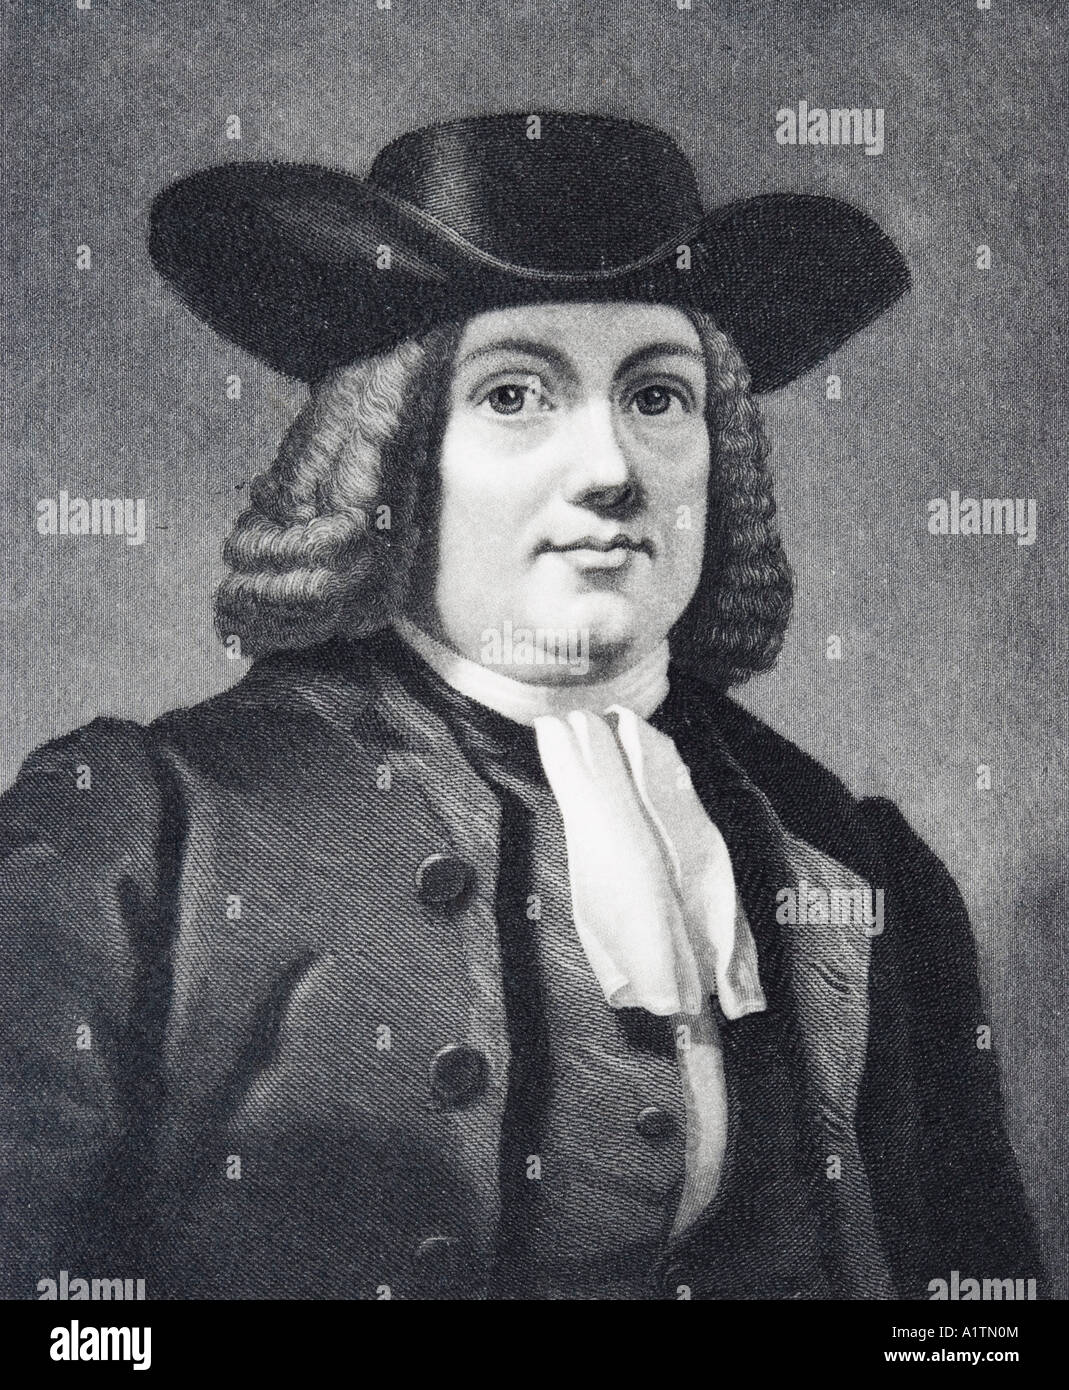 William Penn, 1644 - 1718. Chef Quaker anglais, fondateur de la colonie nord-américaine anglaise de la province de Pennsylvanie Banque D'Images